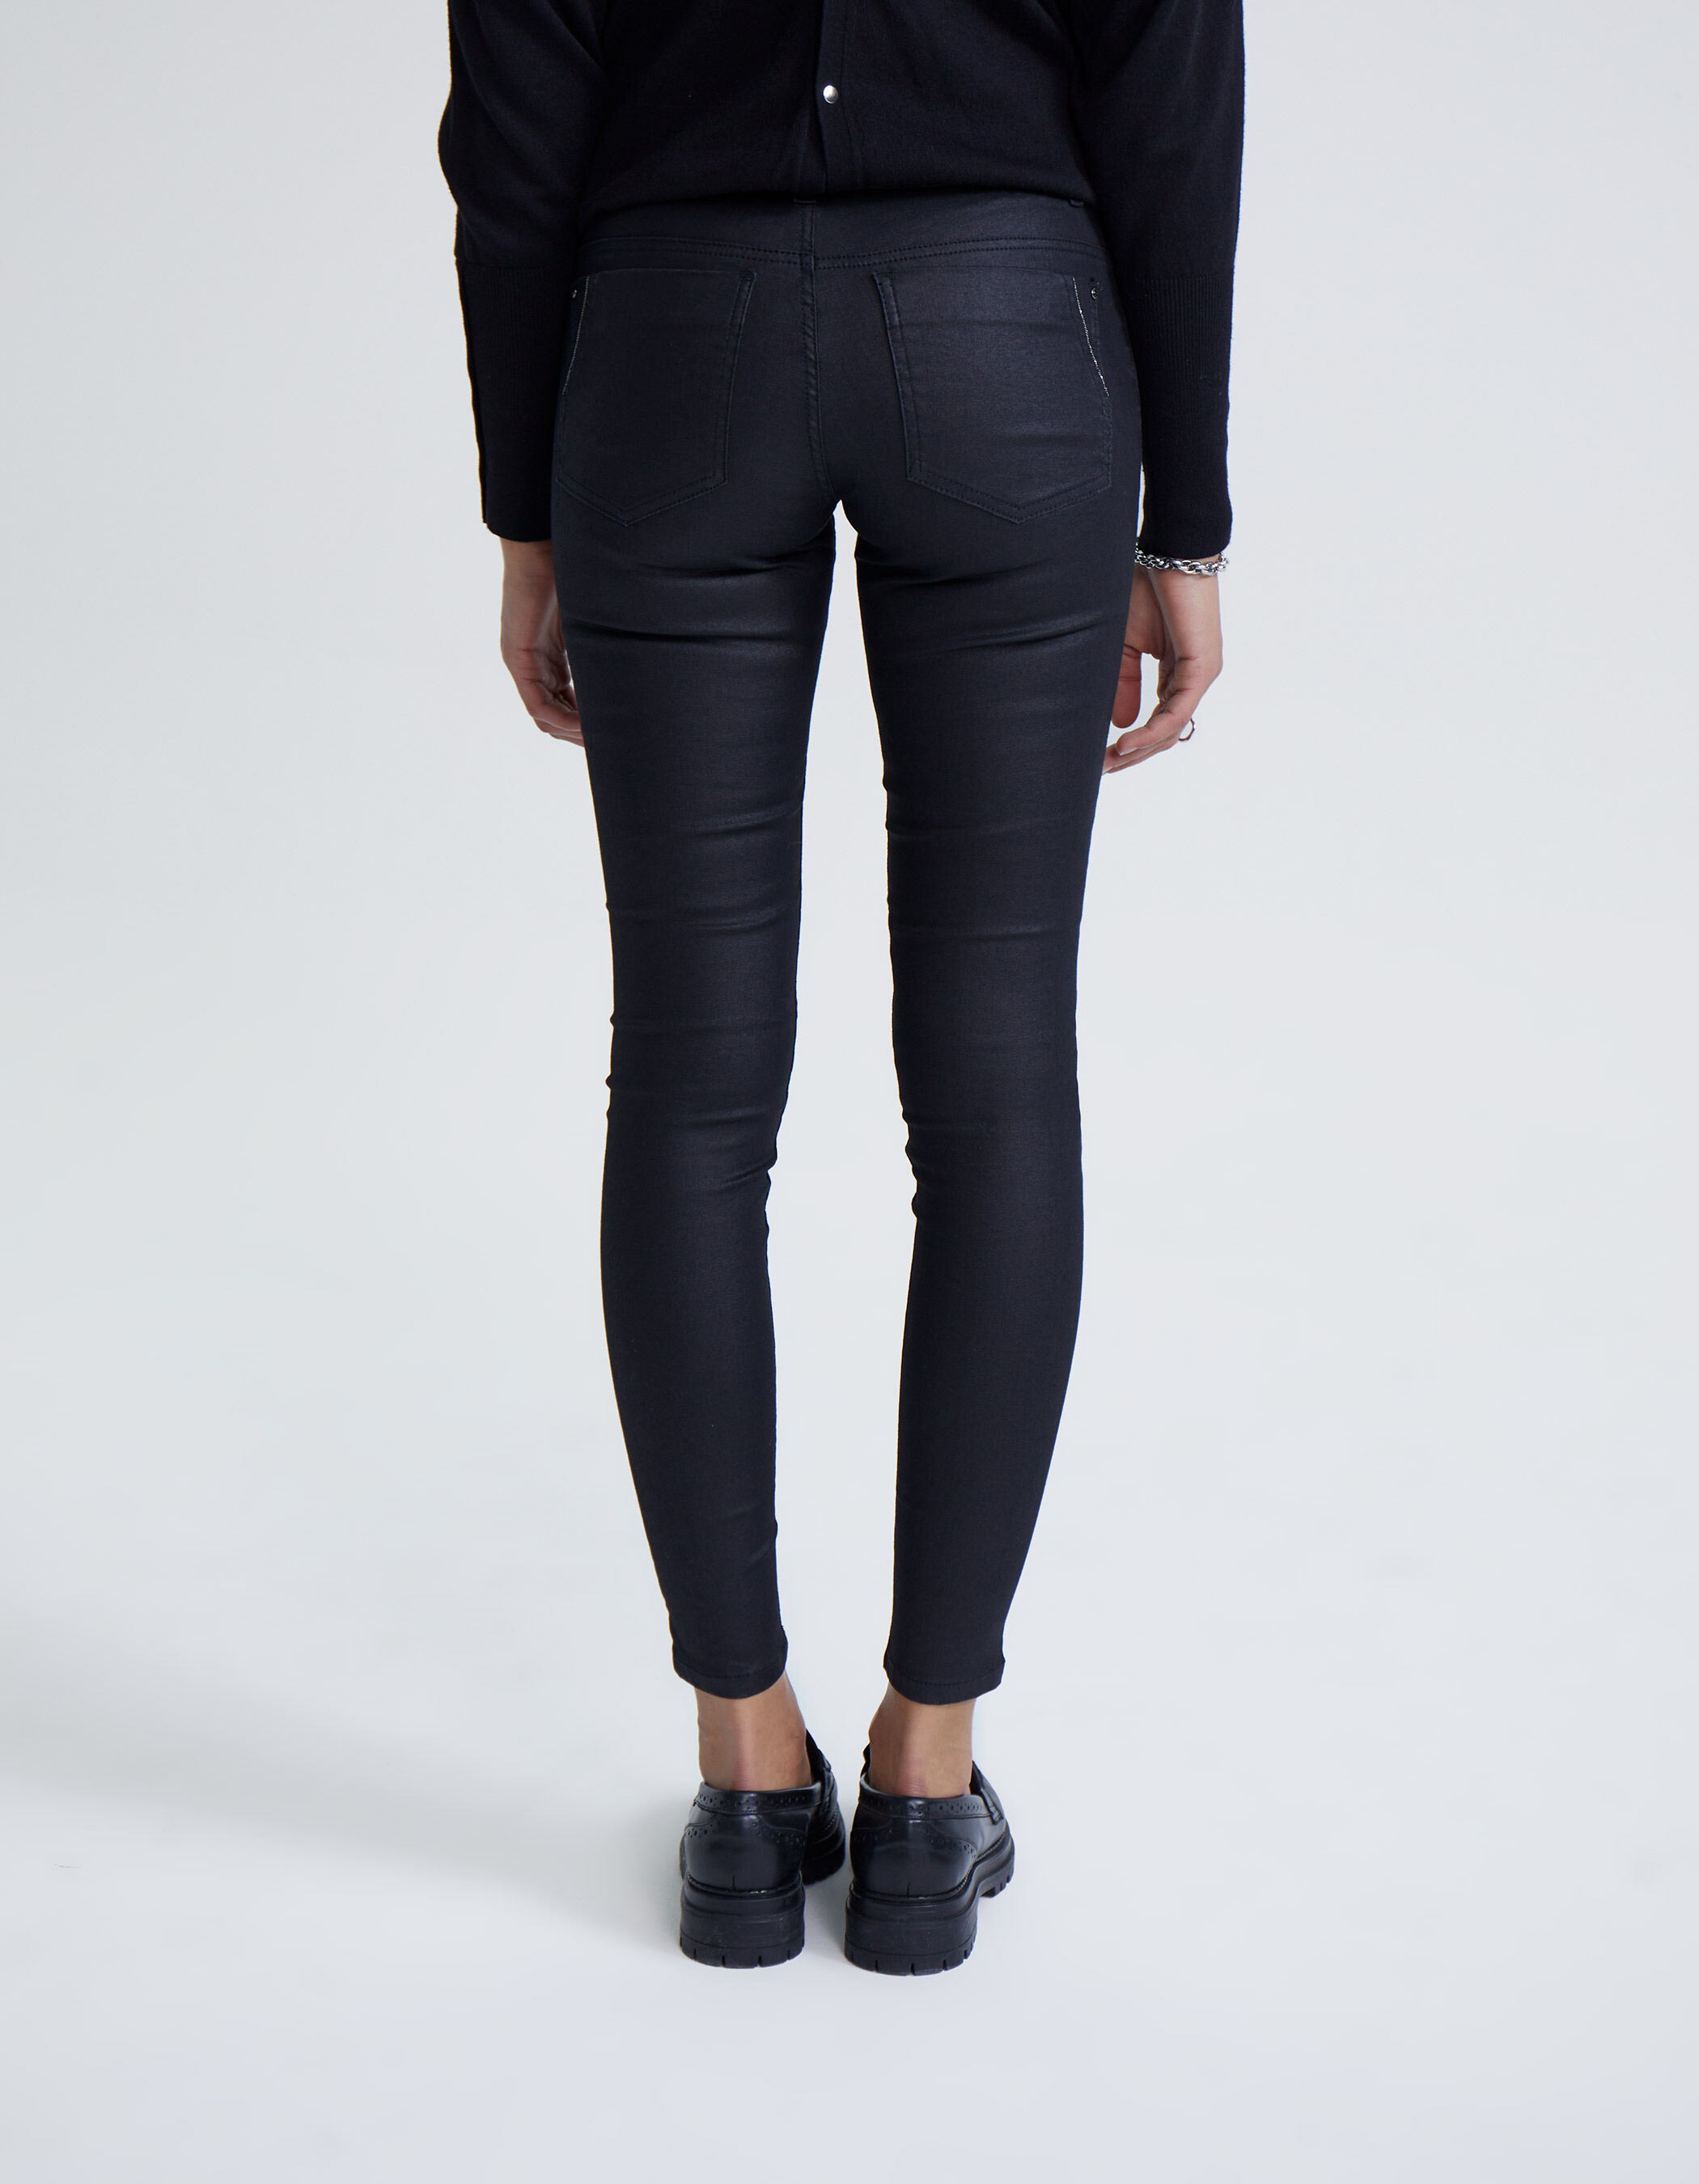 IKKS Jeggings & Skinny & Slim Gray 34                  EU WOMEN FASHION Jeans Jeggings & Skinny & Slim Basic discount 69% 